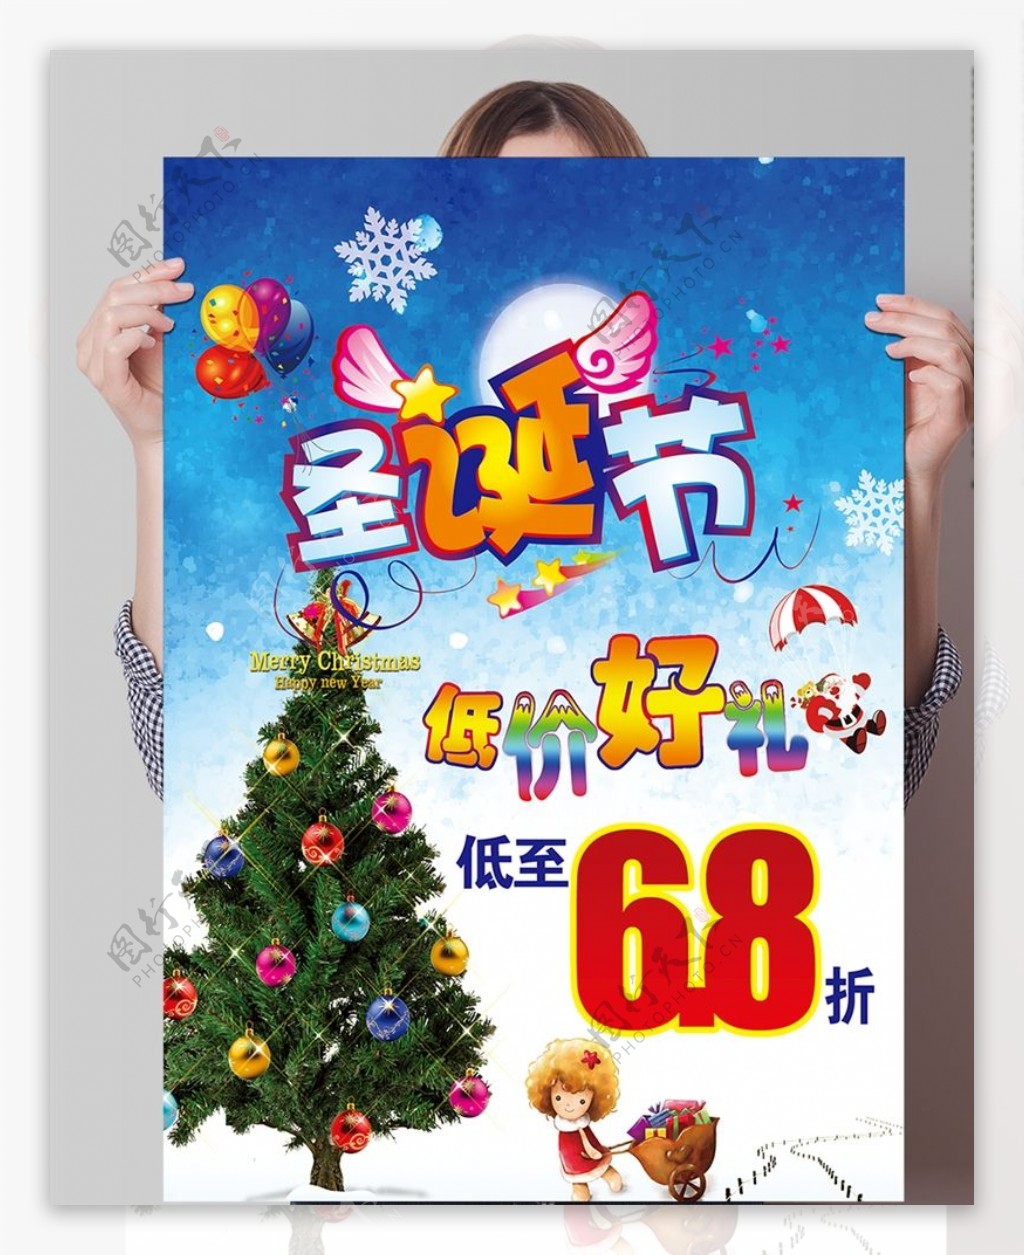 圣诞节低价好礼PSD海报模板